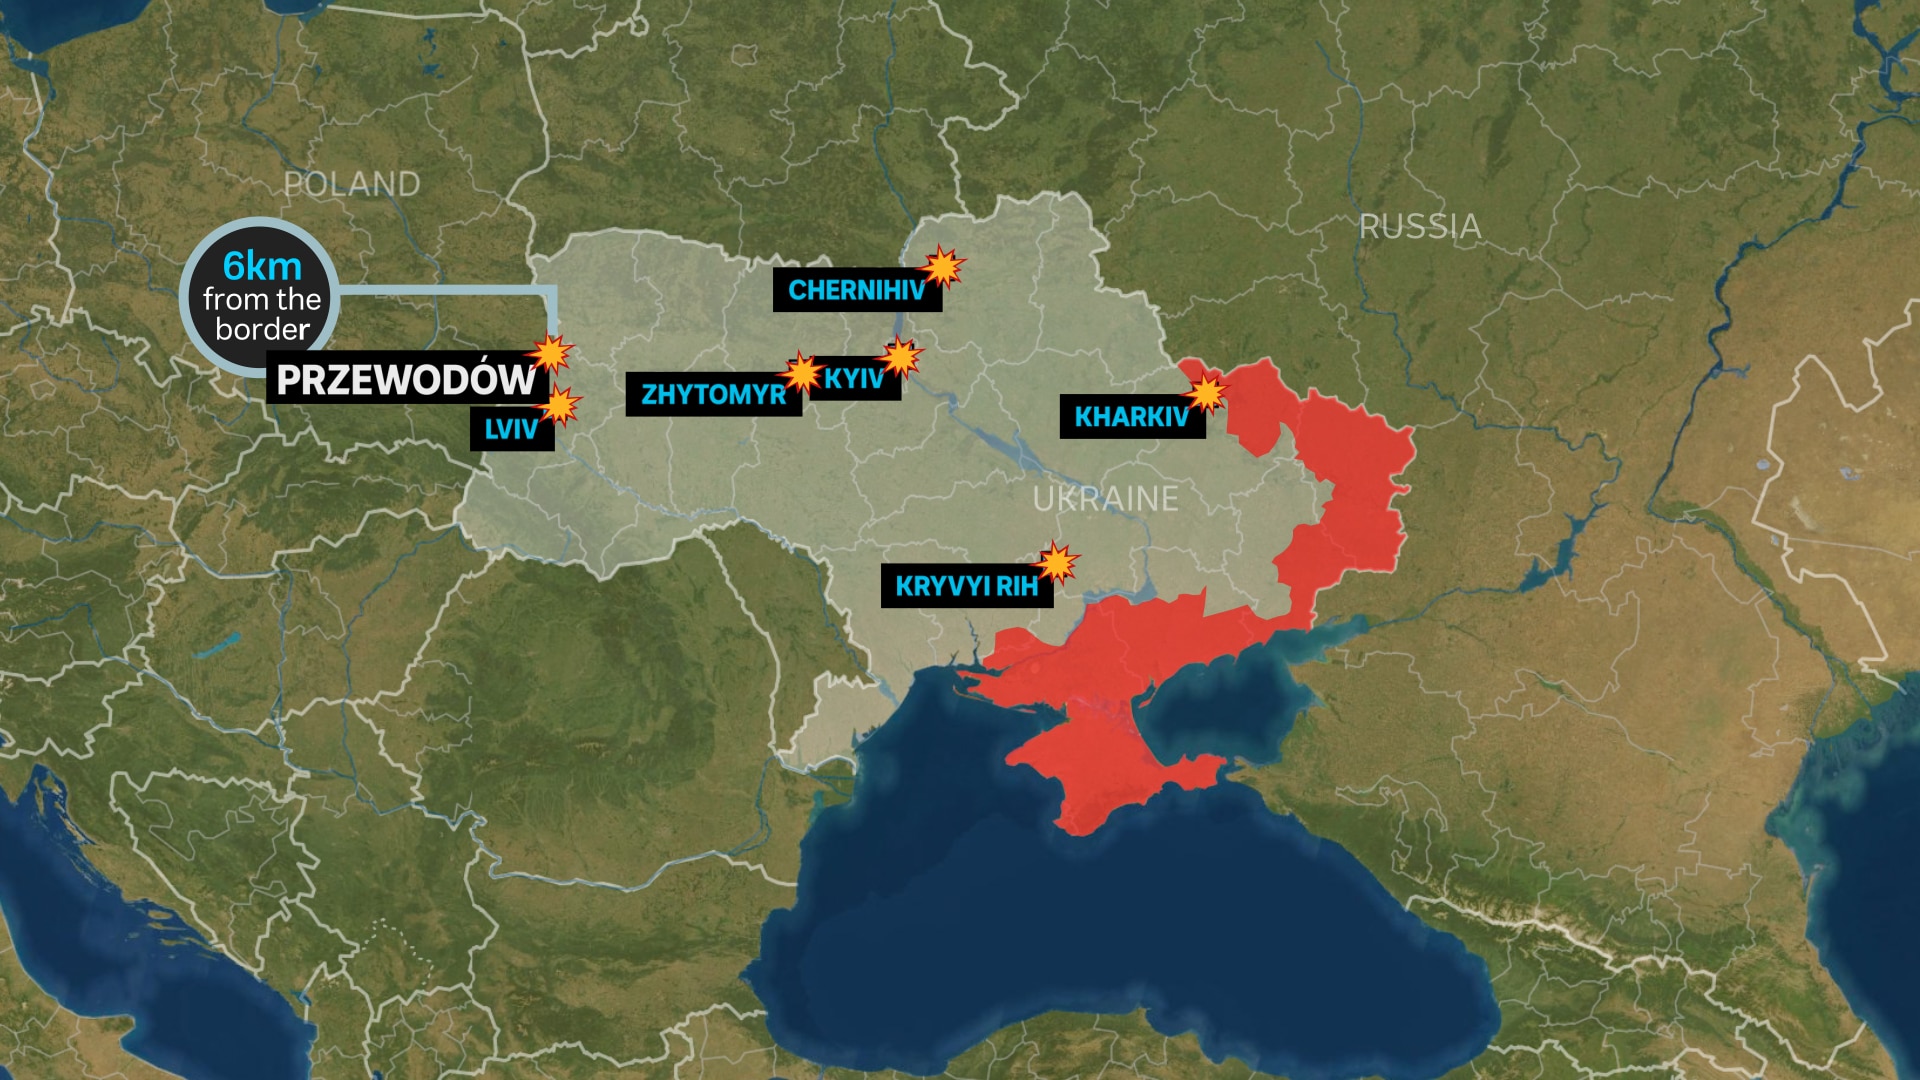   Mapa przedstawiająca rozmieszczenie rosyjskich nalotów rakietowych i lądowań rakietowych na granicy z Polską.